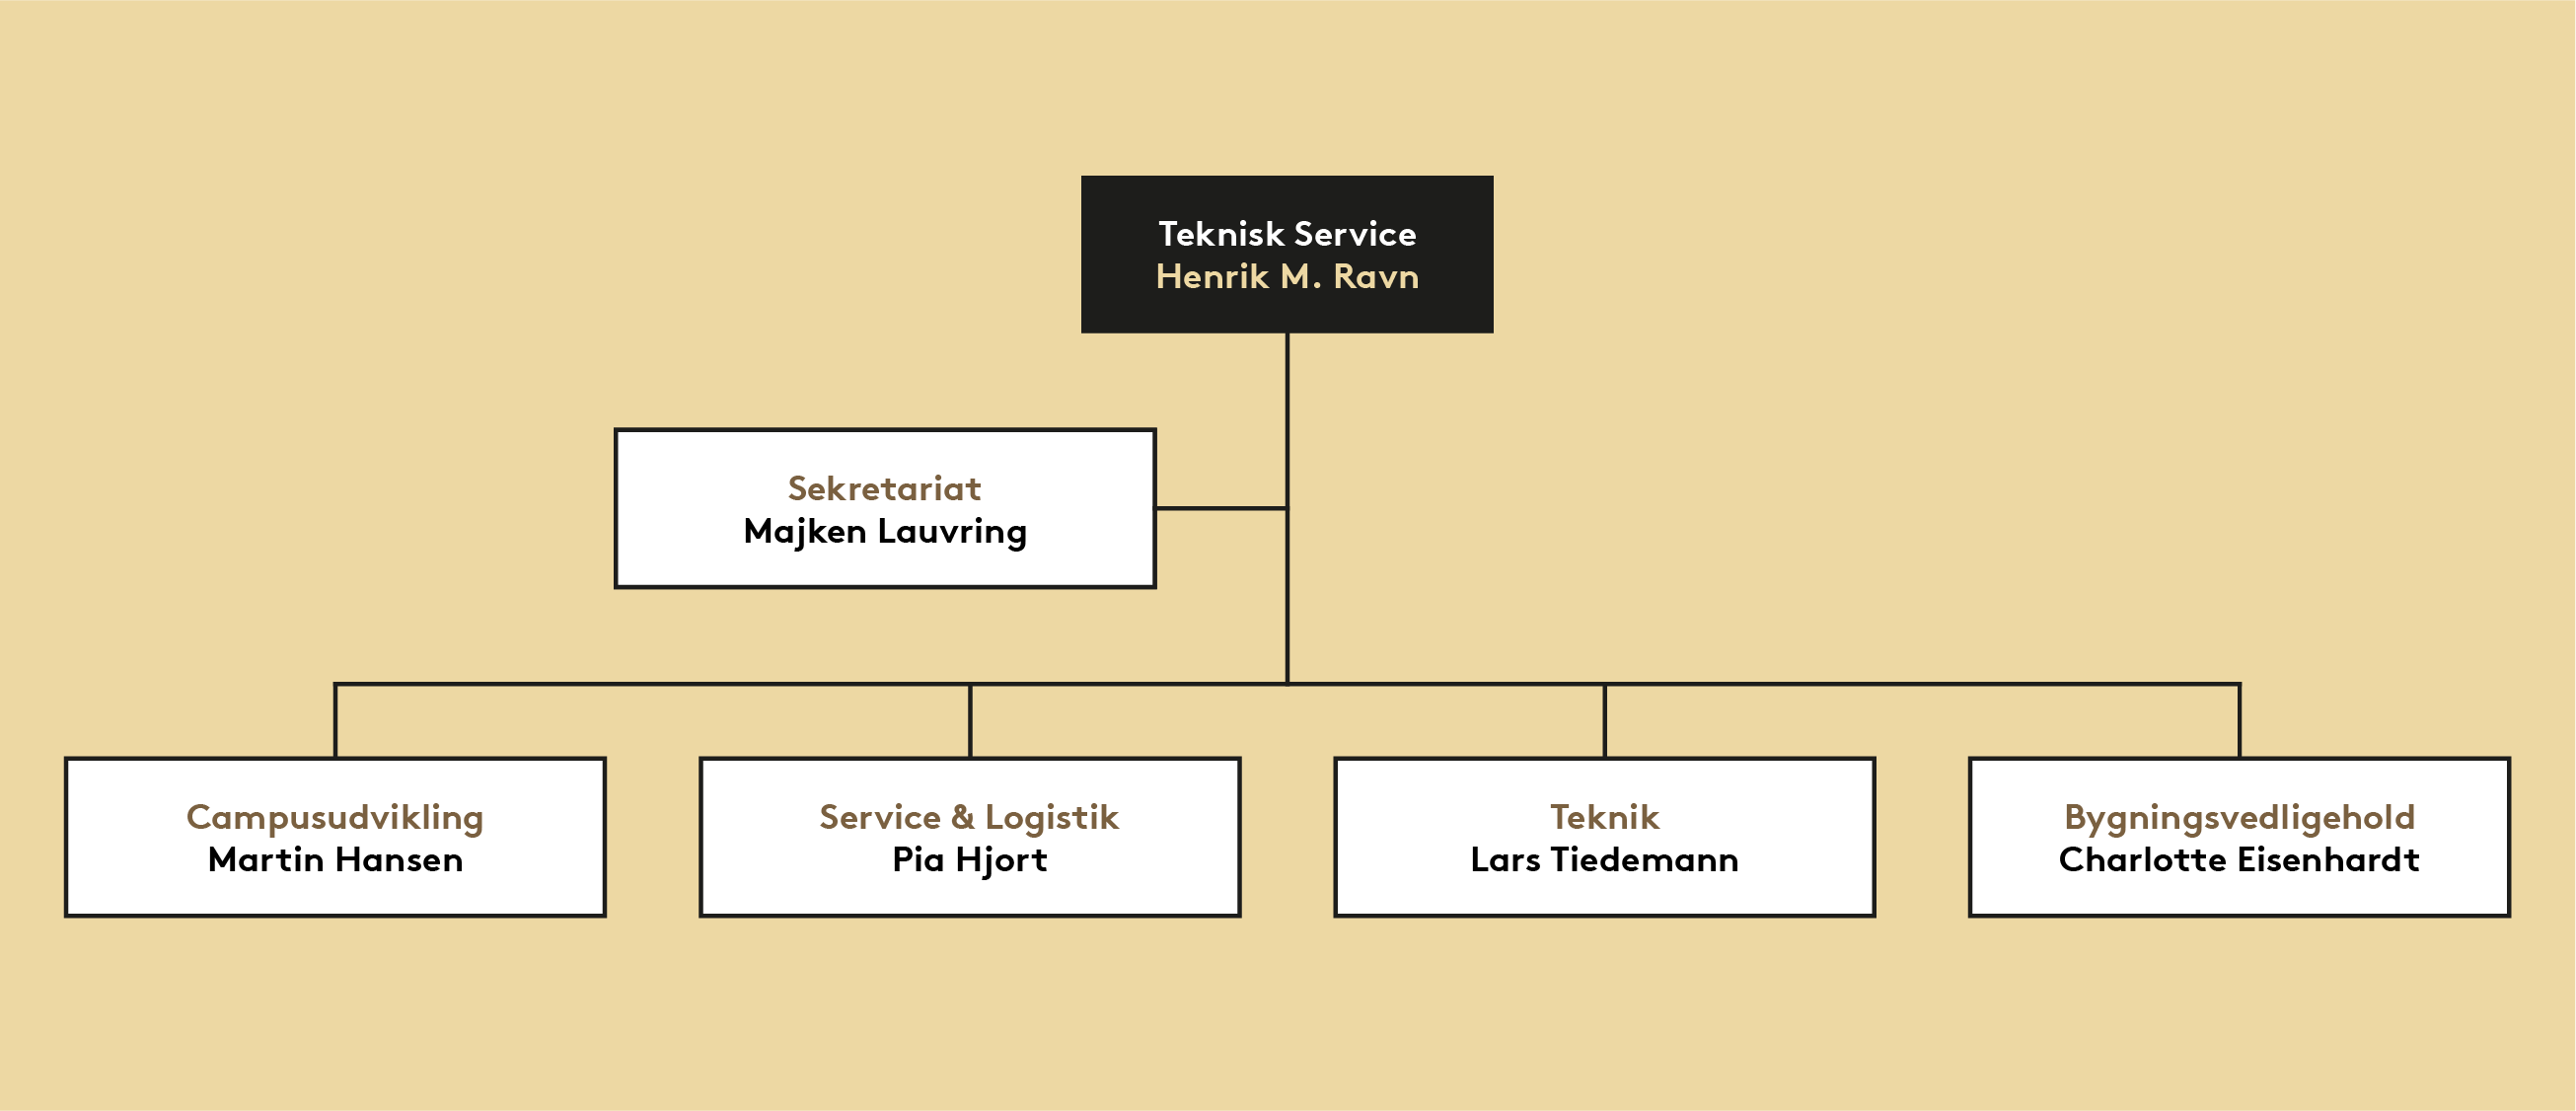 Organisationsdiagram for Teknisk Service